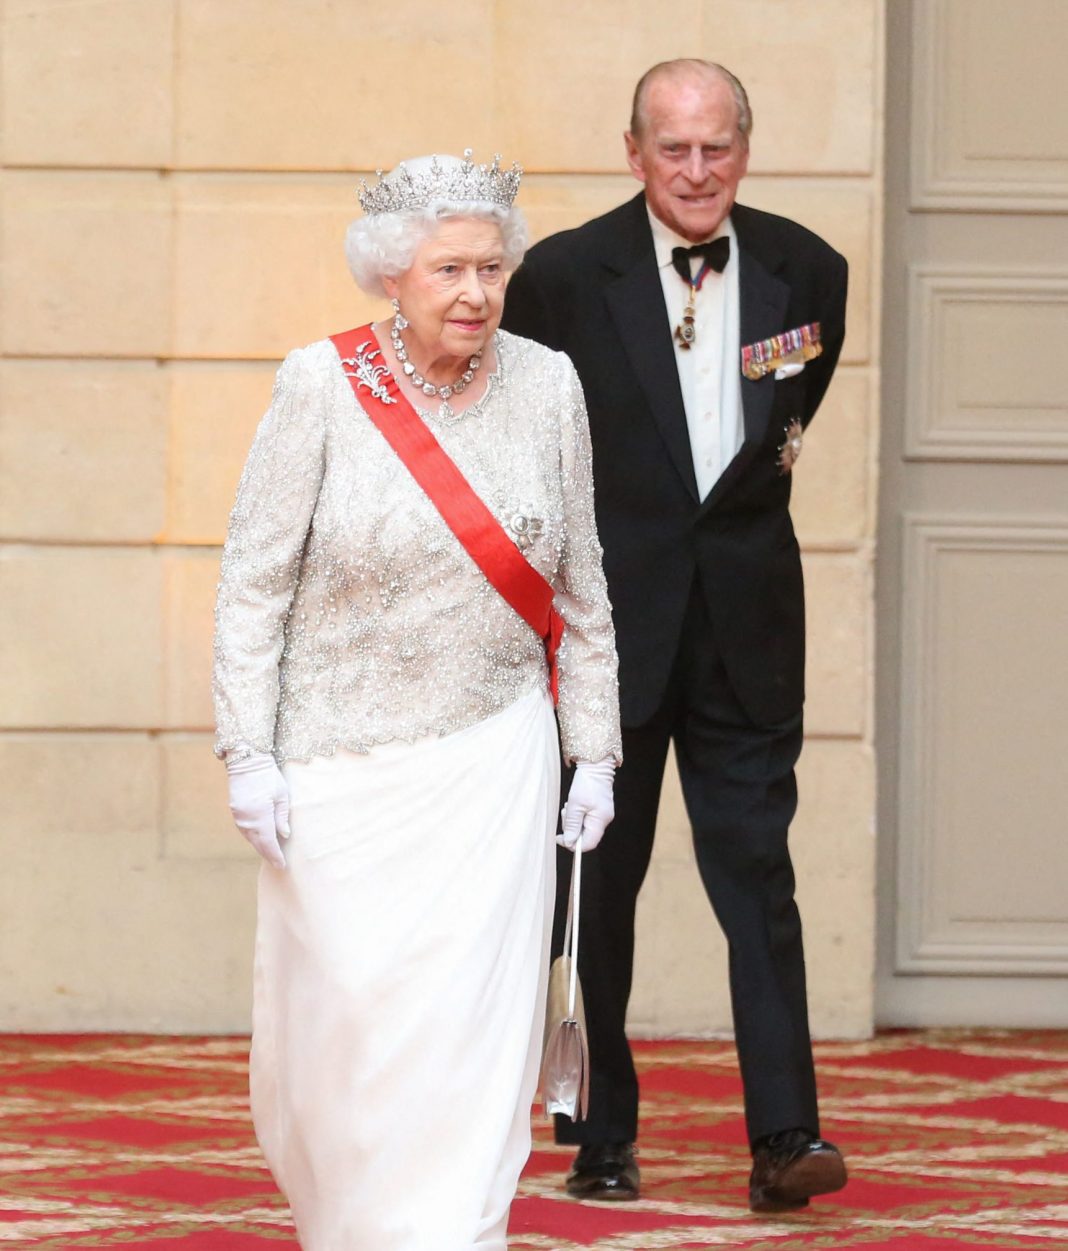 Βασίλισσα Ελισάβετ: Το αντικείμενο του Πρίγκιπα Φίλιππου που κρατούσε καθ' όλη τη διάρκεια της κηδείας του